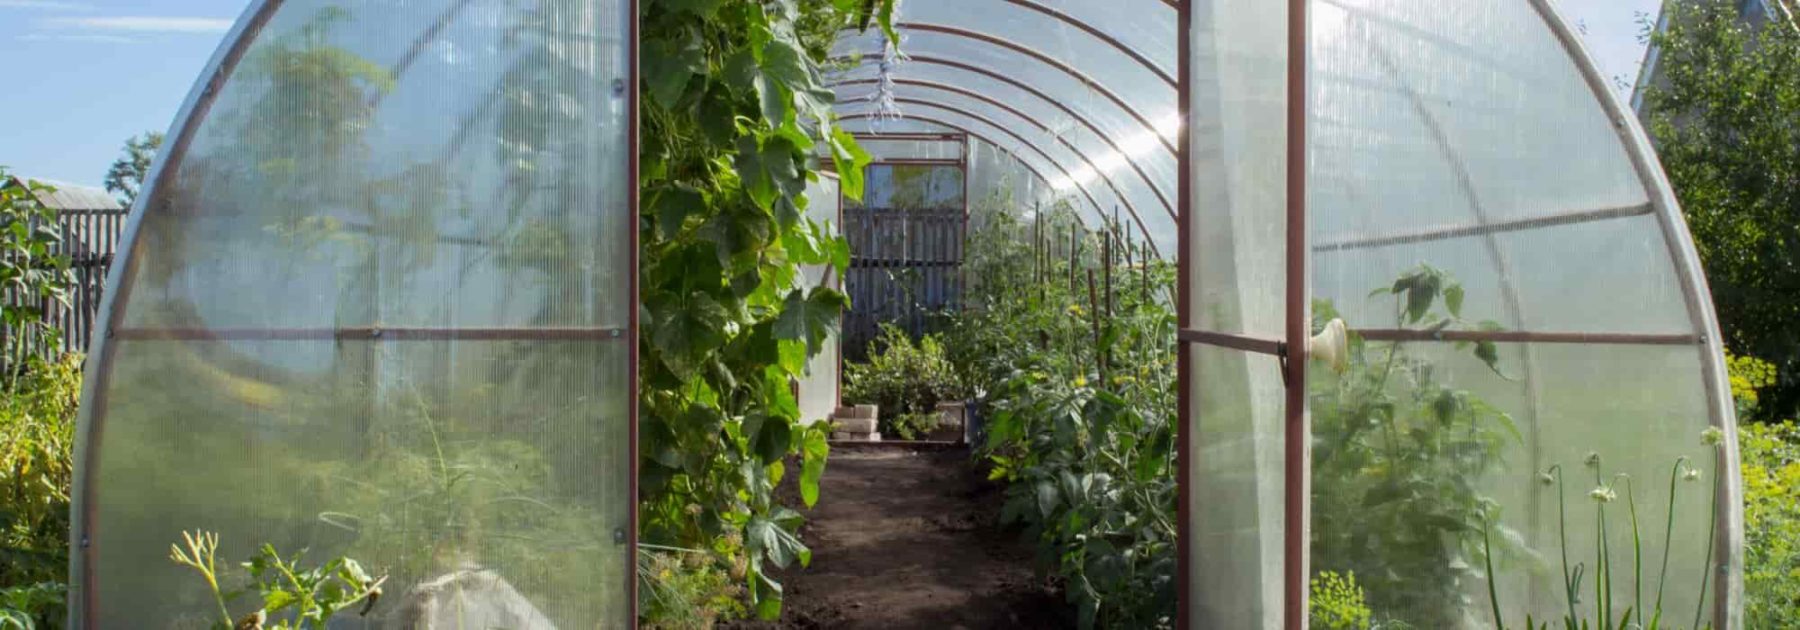 DIY végétal : des plantations dans des bouteilles en verre - Marie